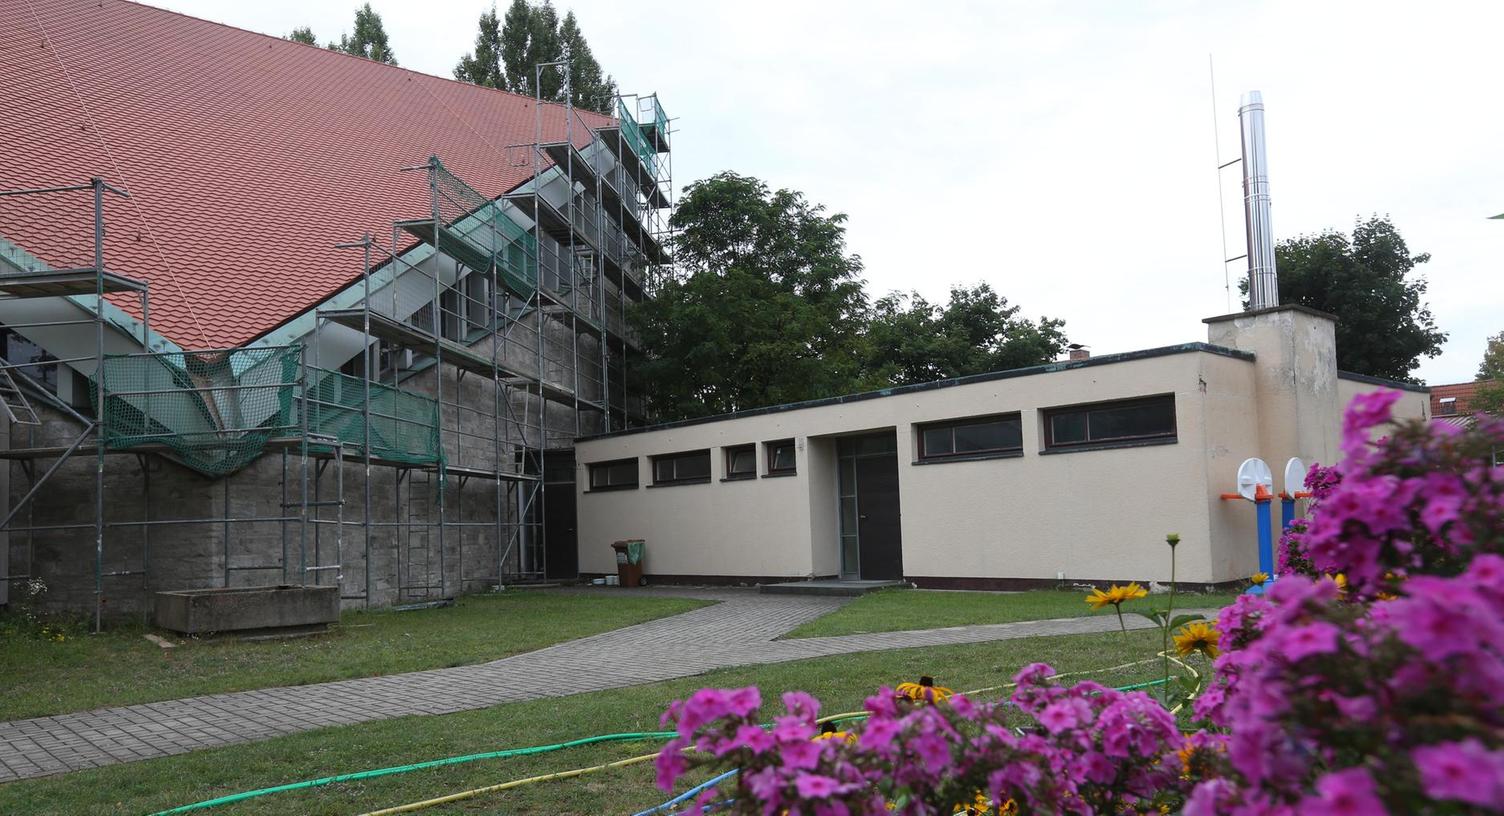 Neues Dach für Pfarrkirche St. Josef in Baiersdorf